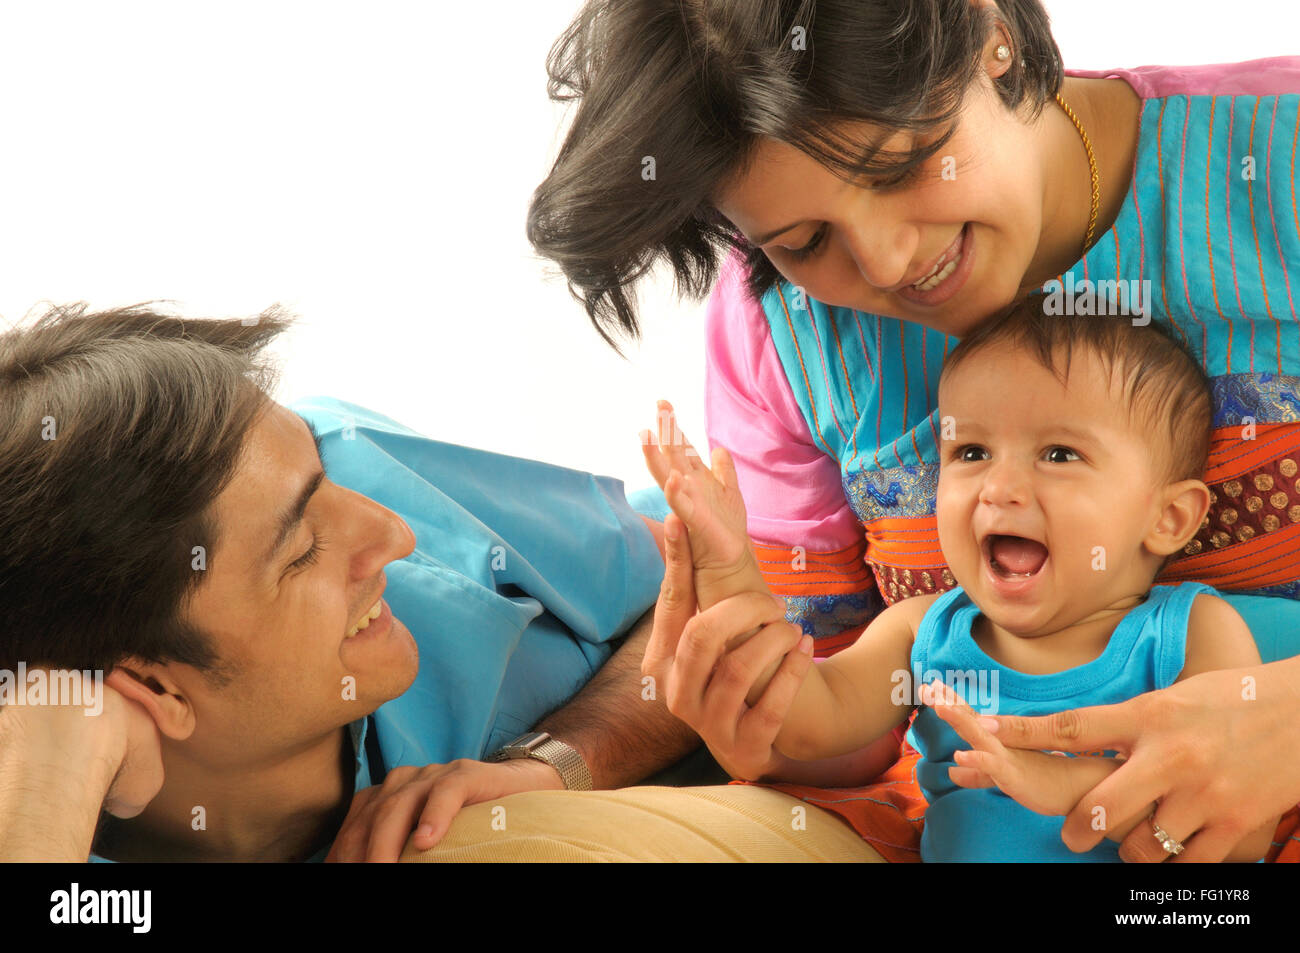 Les parents d'un an bébé garçon riant M.# 592 29 Mars 2008 Banque D'Images